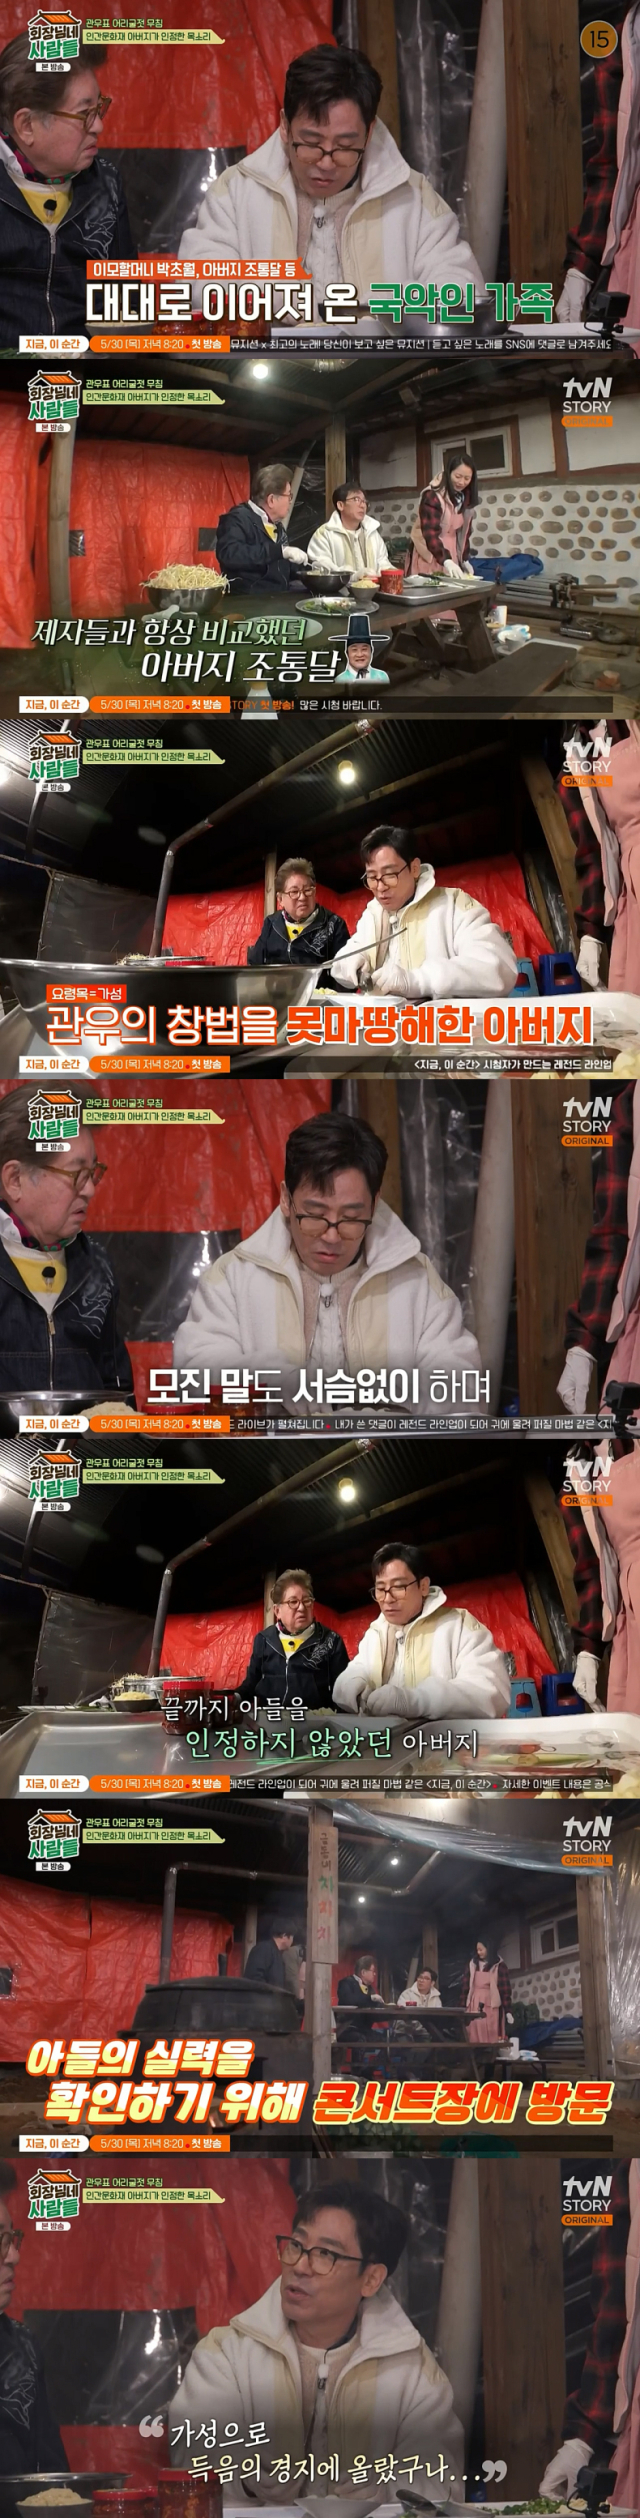 아버지인 인간문화재 국악인 조통달과의 일화를 공개한 가수 조관우./케이블채널 tvN STORY 예능프로그램 '회장님네 사람들' 방송 캡처